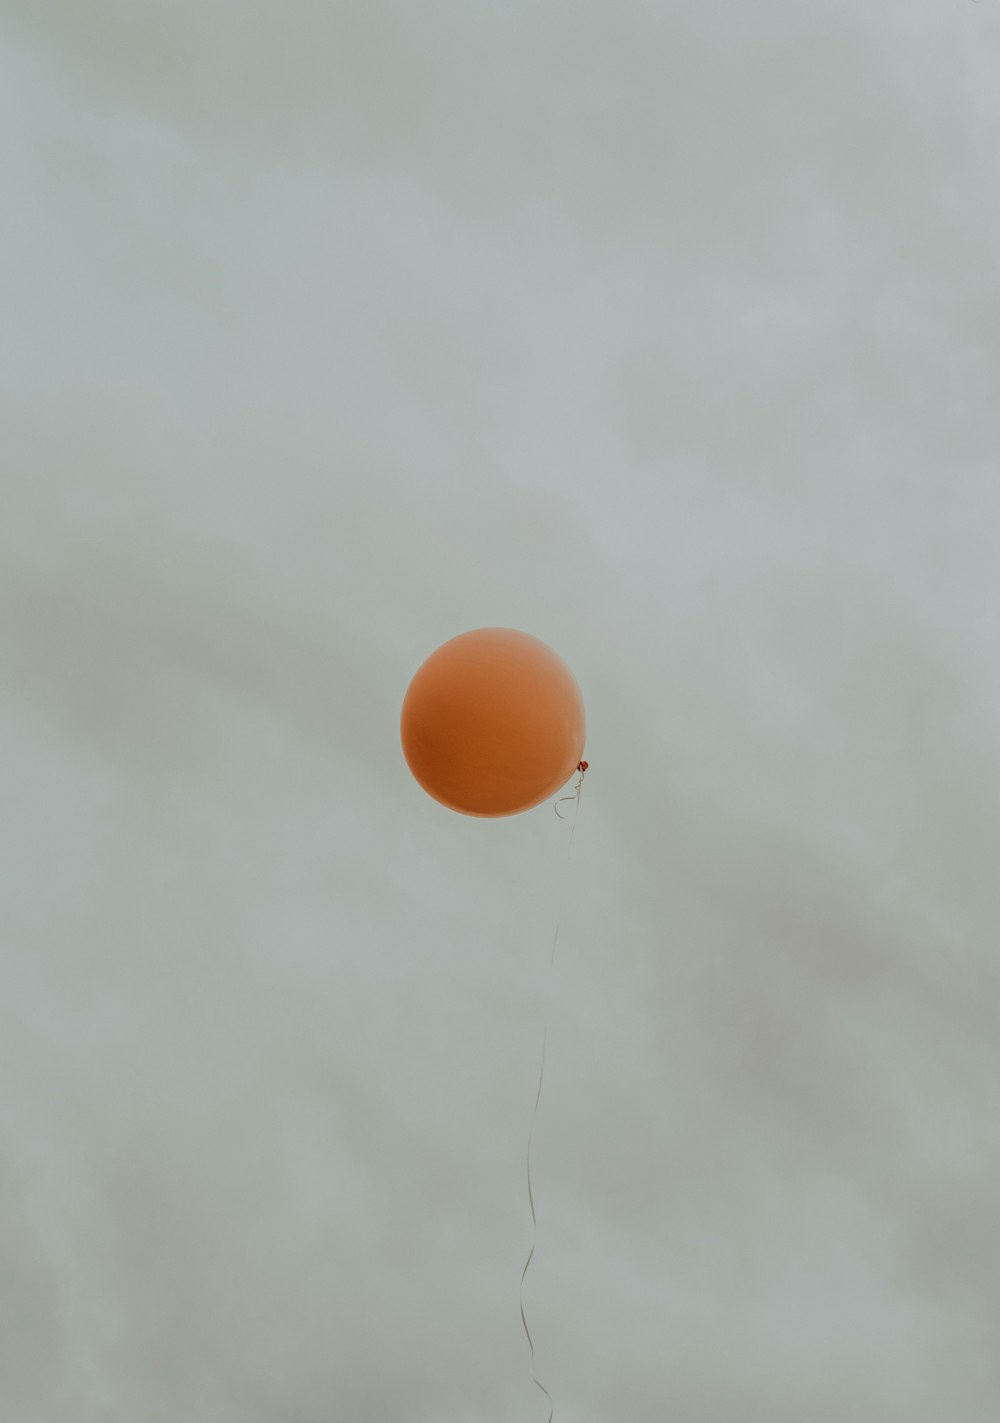 Fliegender orangefarbener Ballon